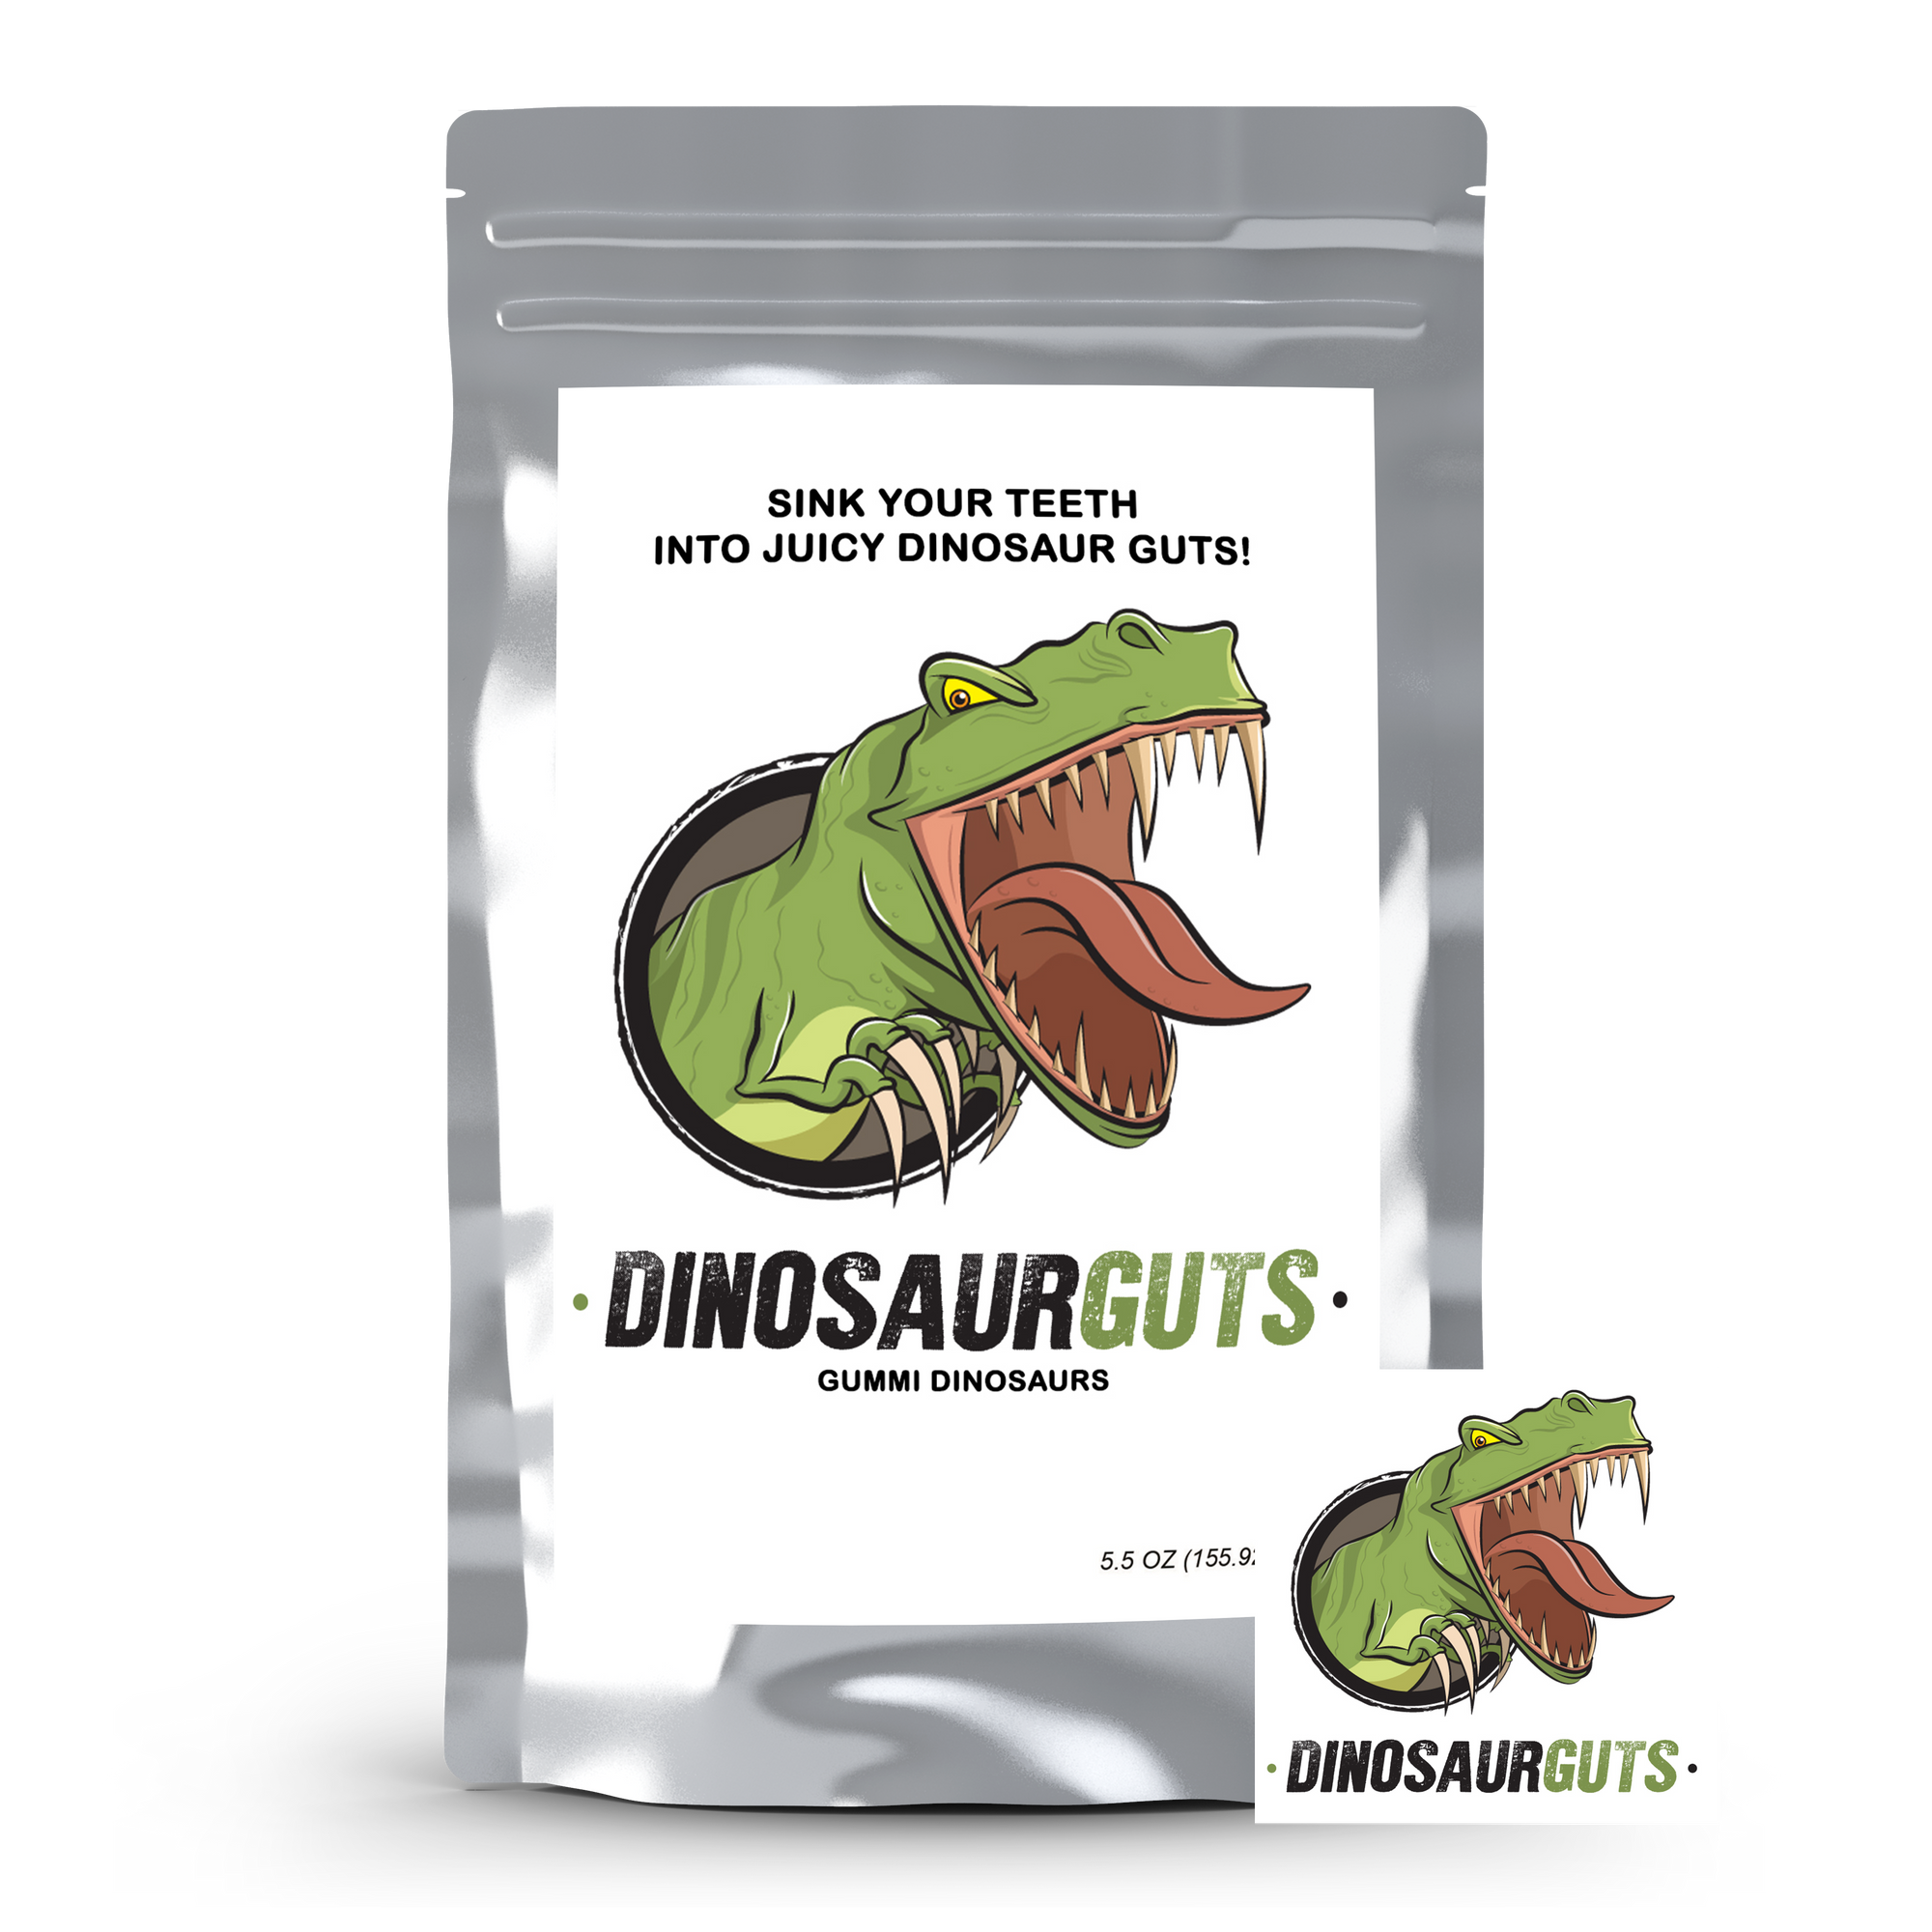 Dinosaur Guts